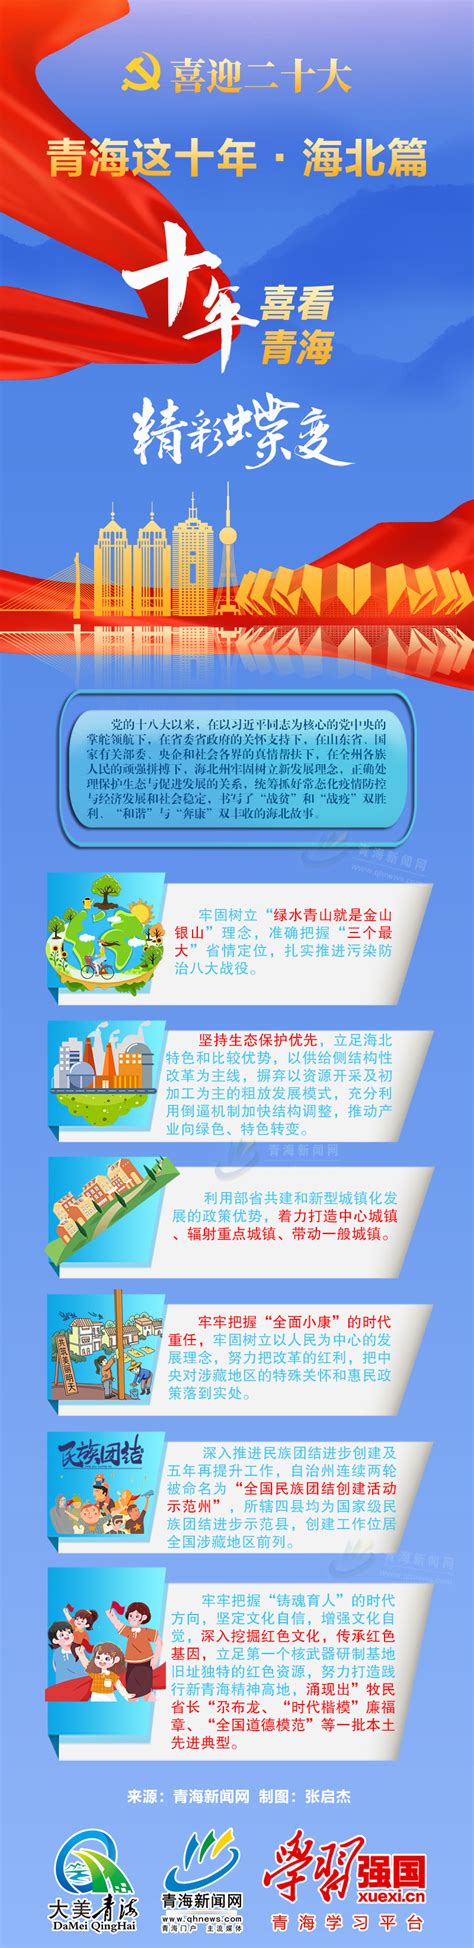 「青海app地推」青海网站推广策划方案 - 首码网